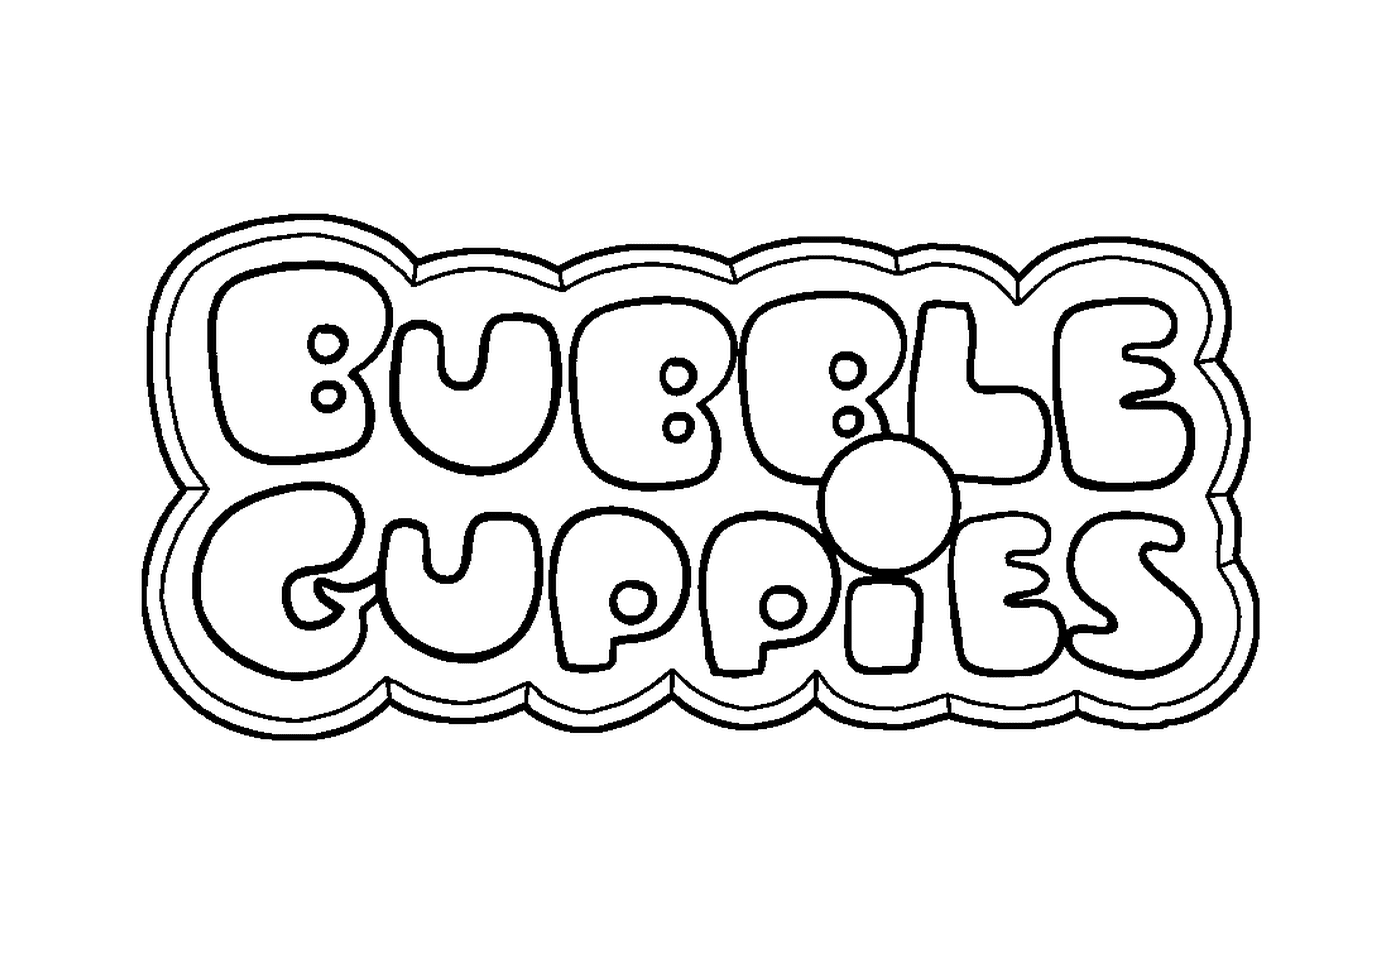   Le logo des Bubble Guppies 